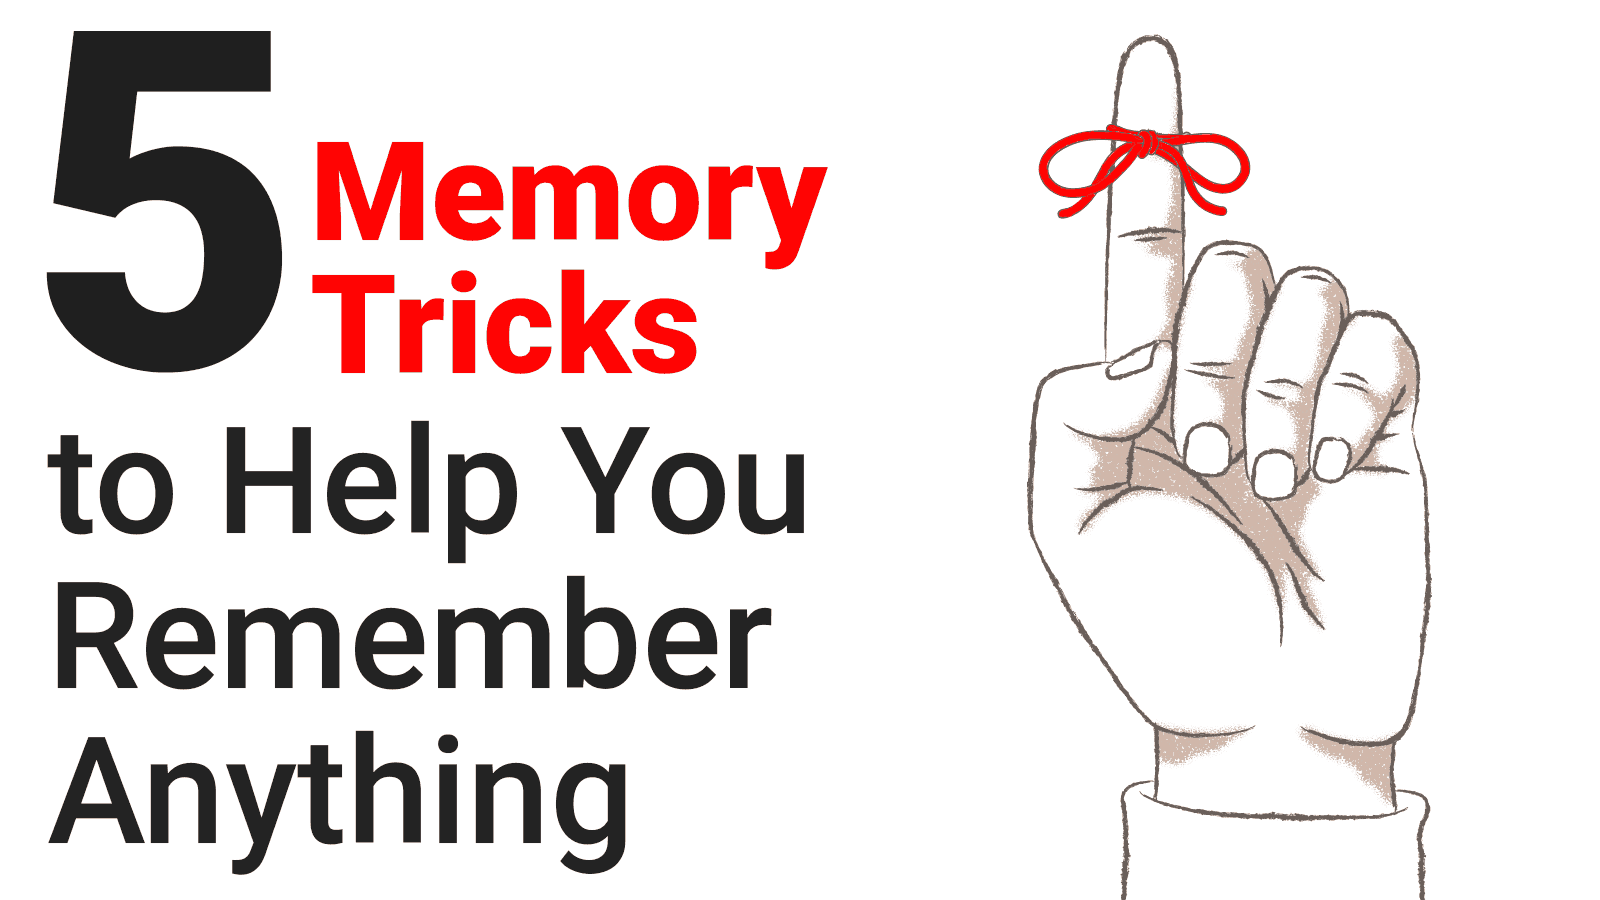 Memory tricks